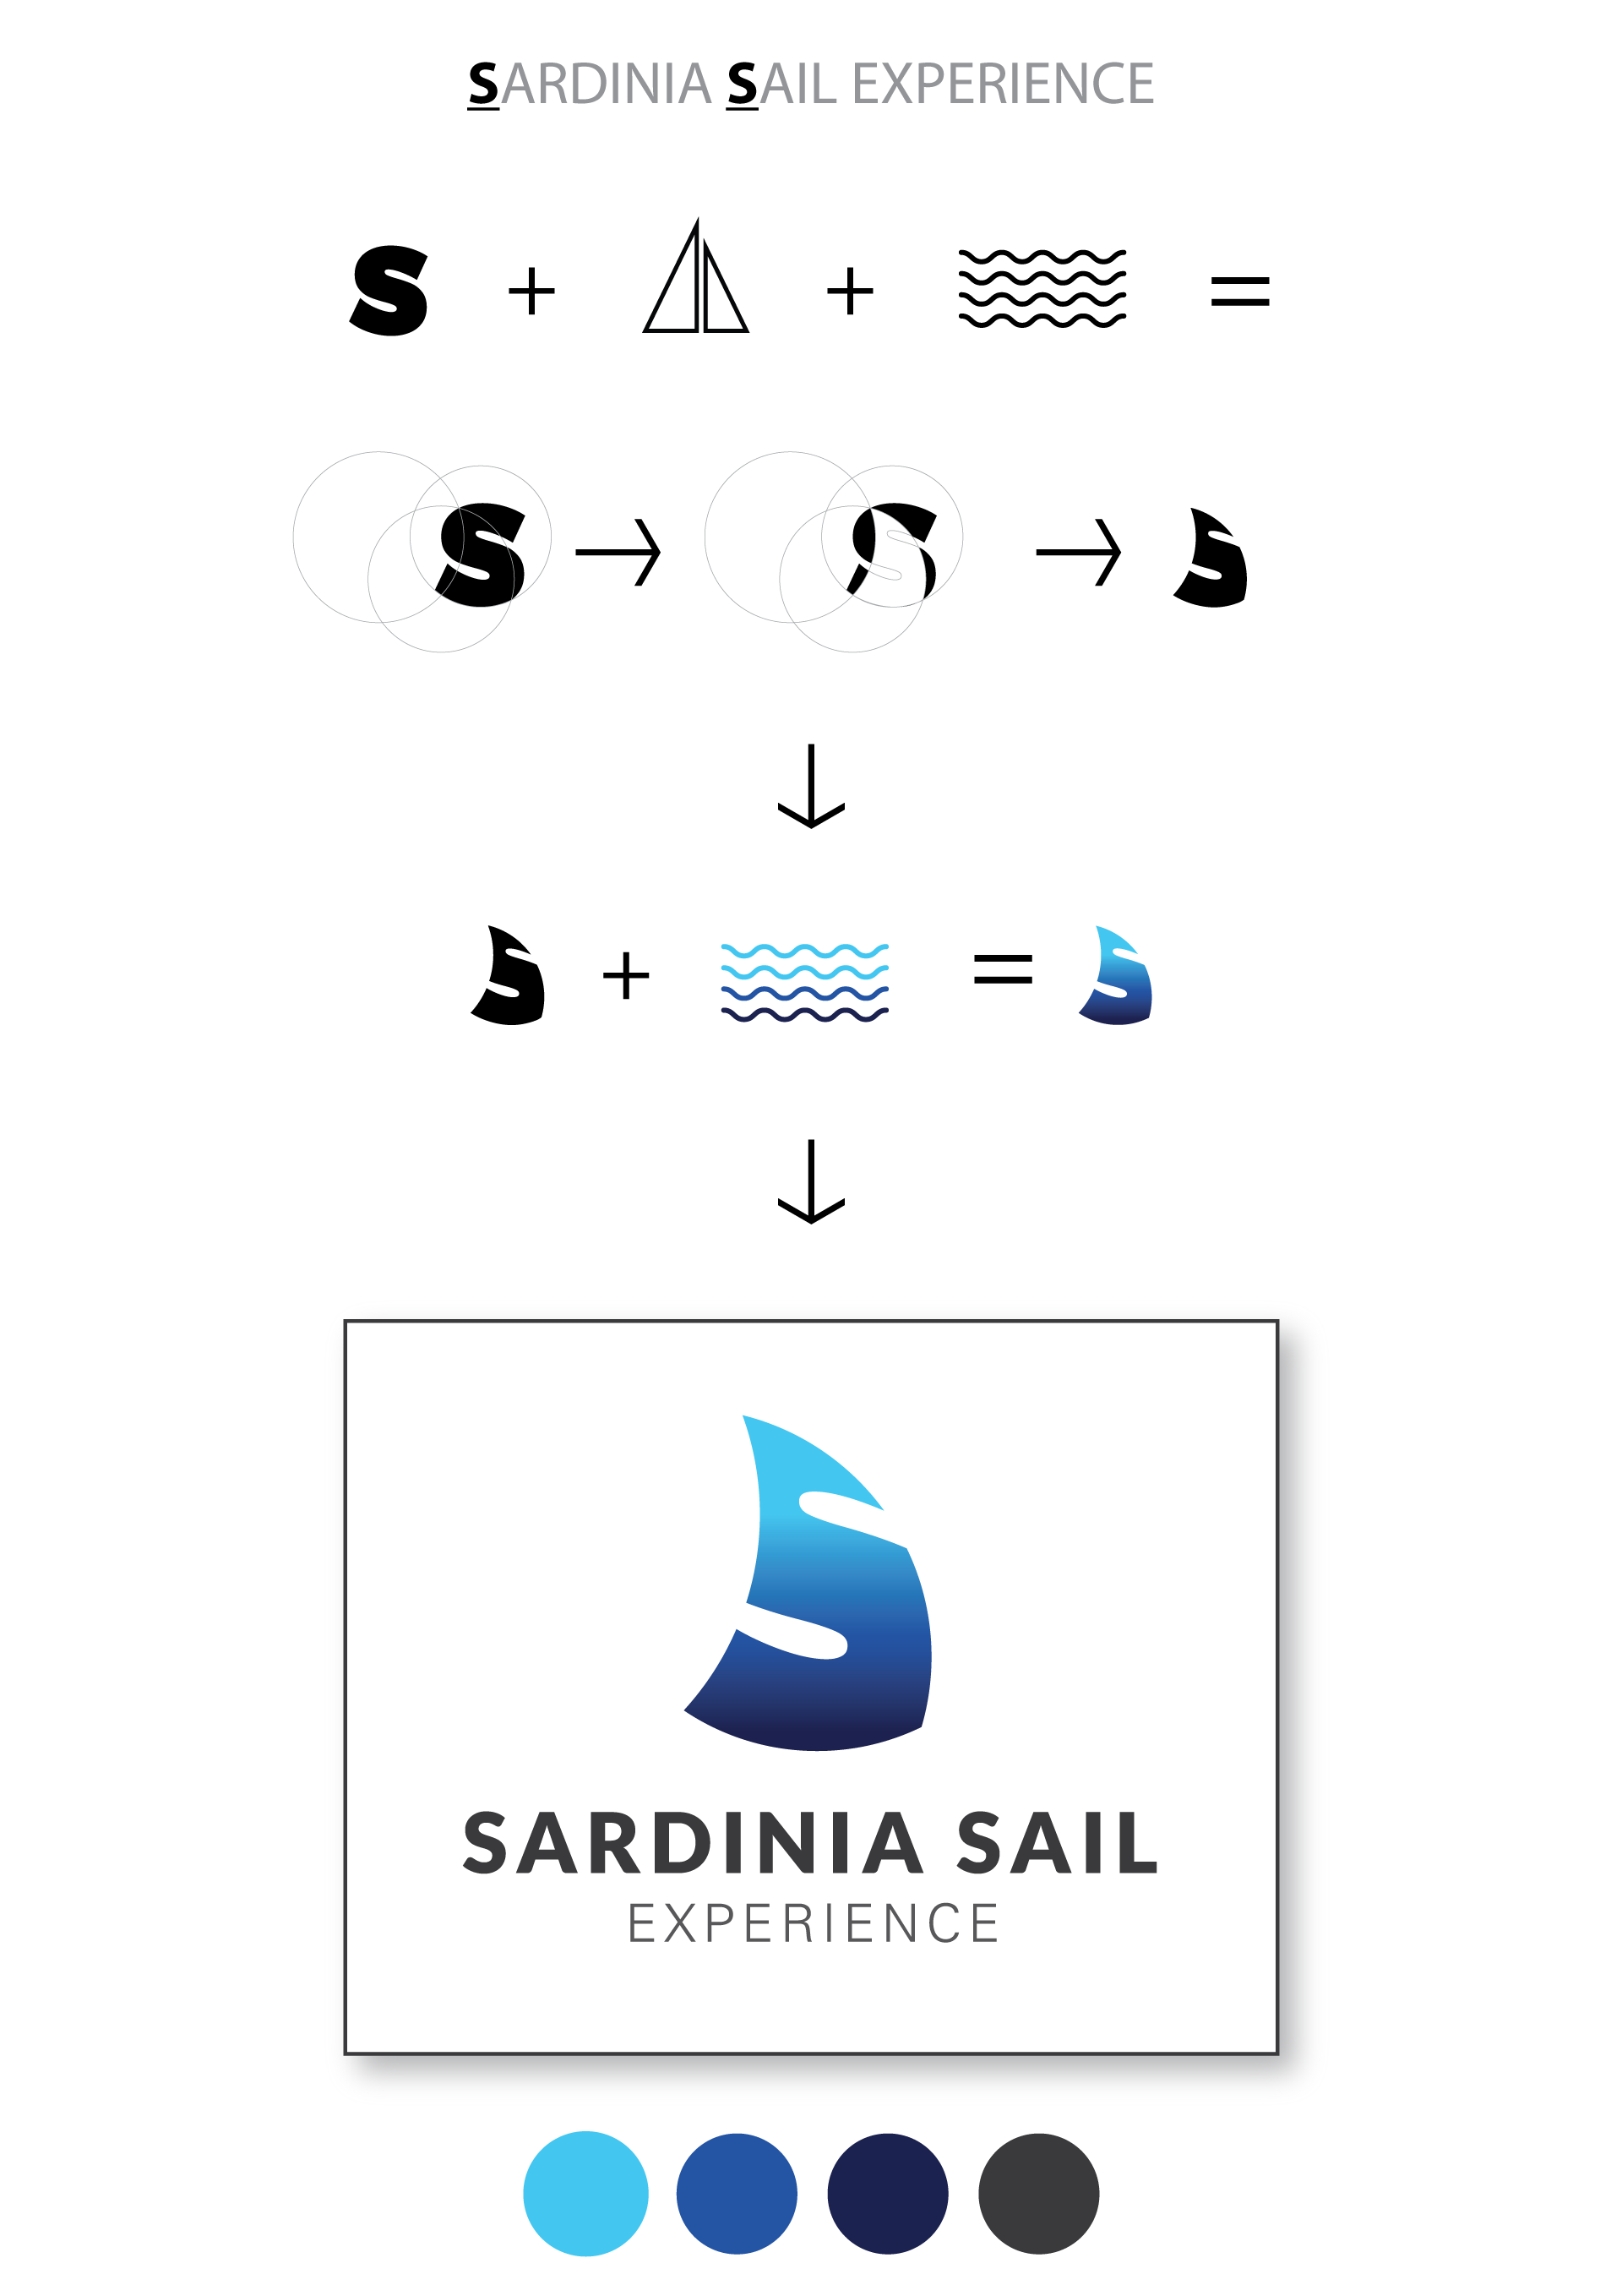 creazione-logo-sardinia-sail-experience-care-web-desgin-cagliari-sardegna